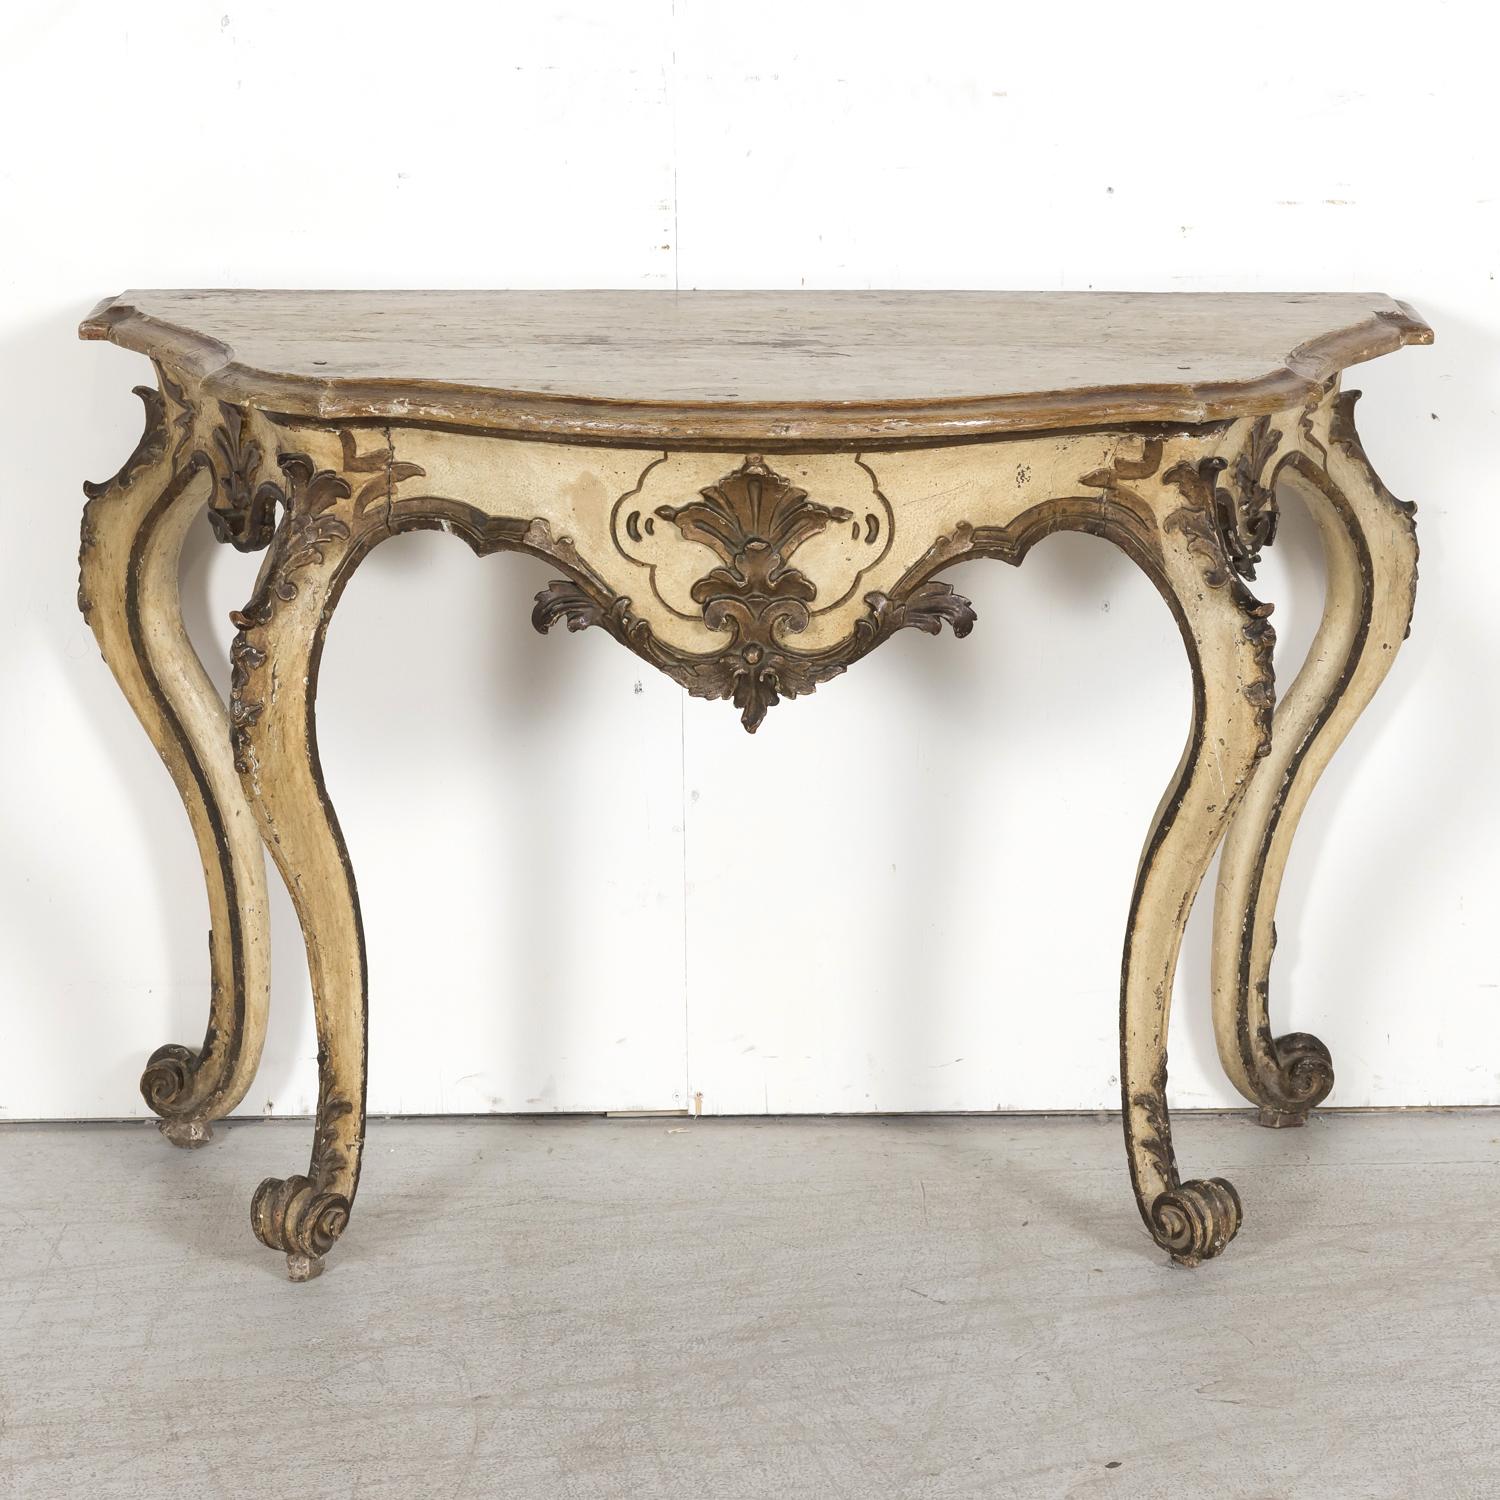 Une élégante table console en bois doré de style Rococo italien du 19e siècle, sculptée à la main et peinte en polychromie, vers les années 1850. Fabriquée à la main en Toscane, cette magnifique console murale ancienne présente un plateau serpentin